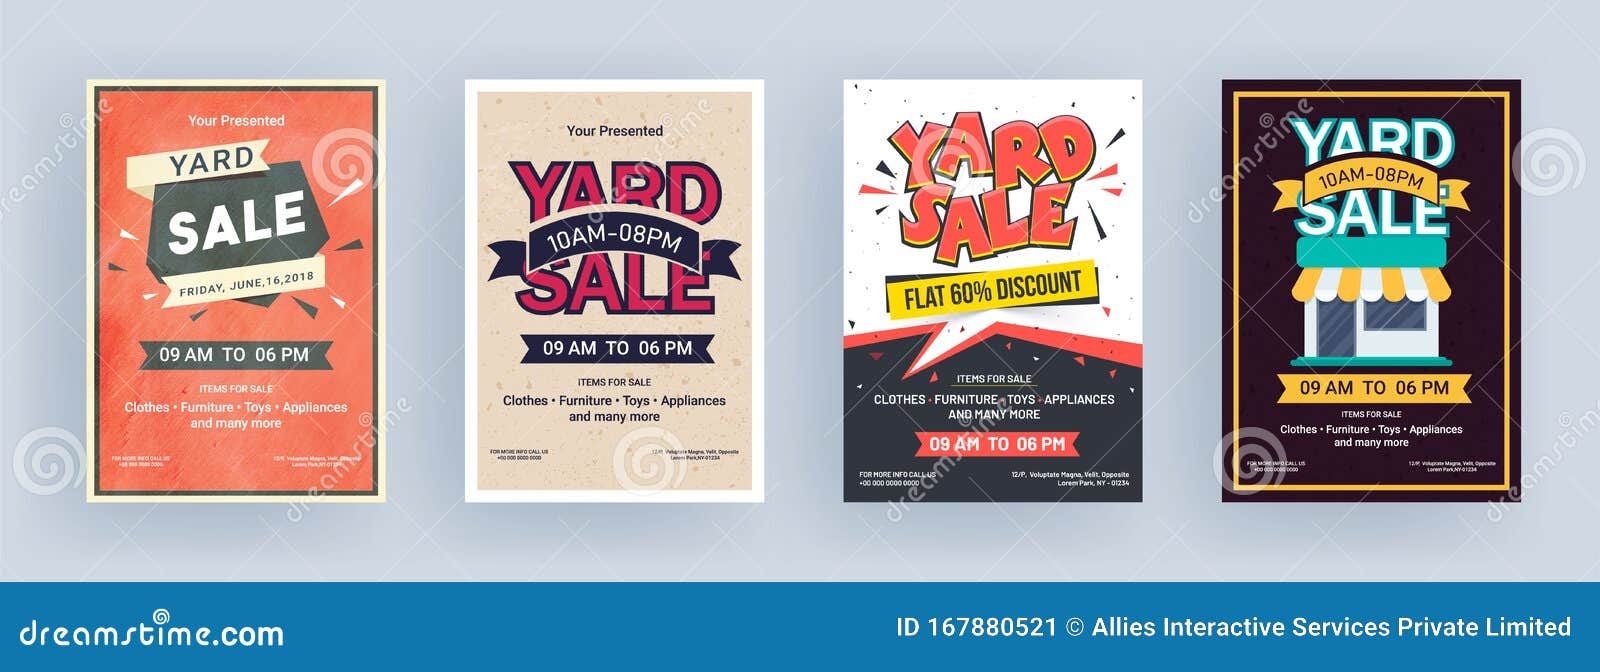 Vintage Yard Sale Flyer or Template Design. Stock Illustration Regarding Yard Sale Flyer Template Word